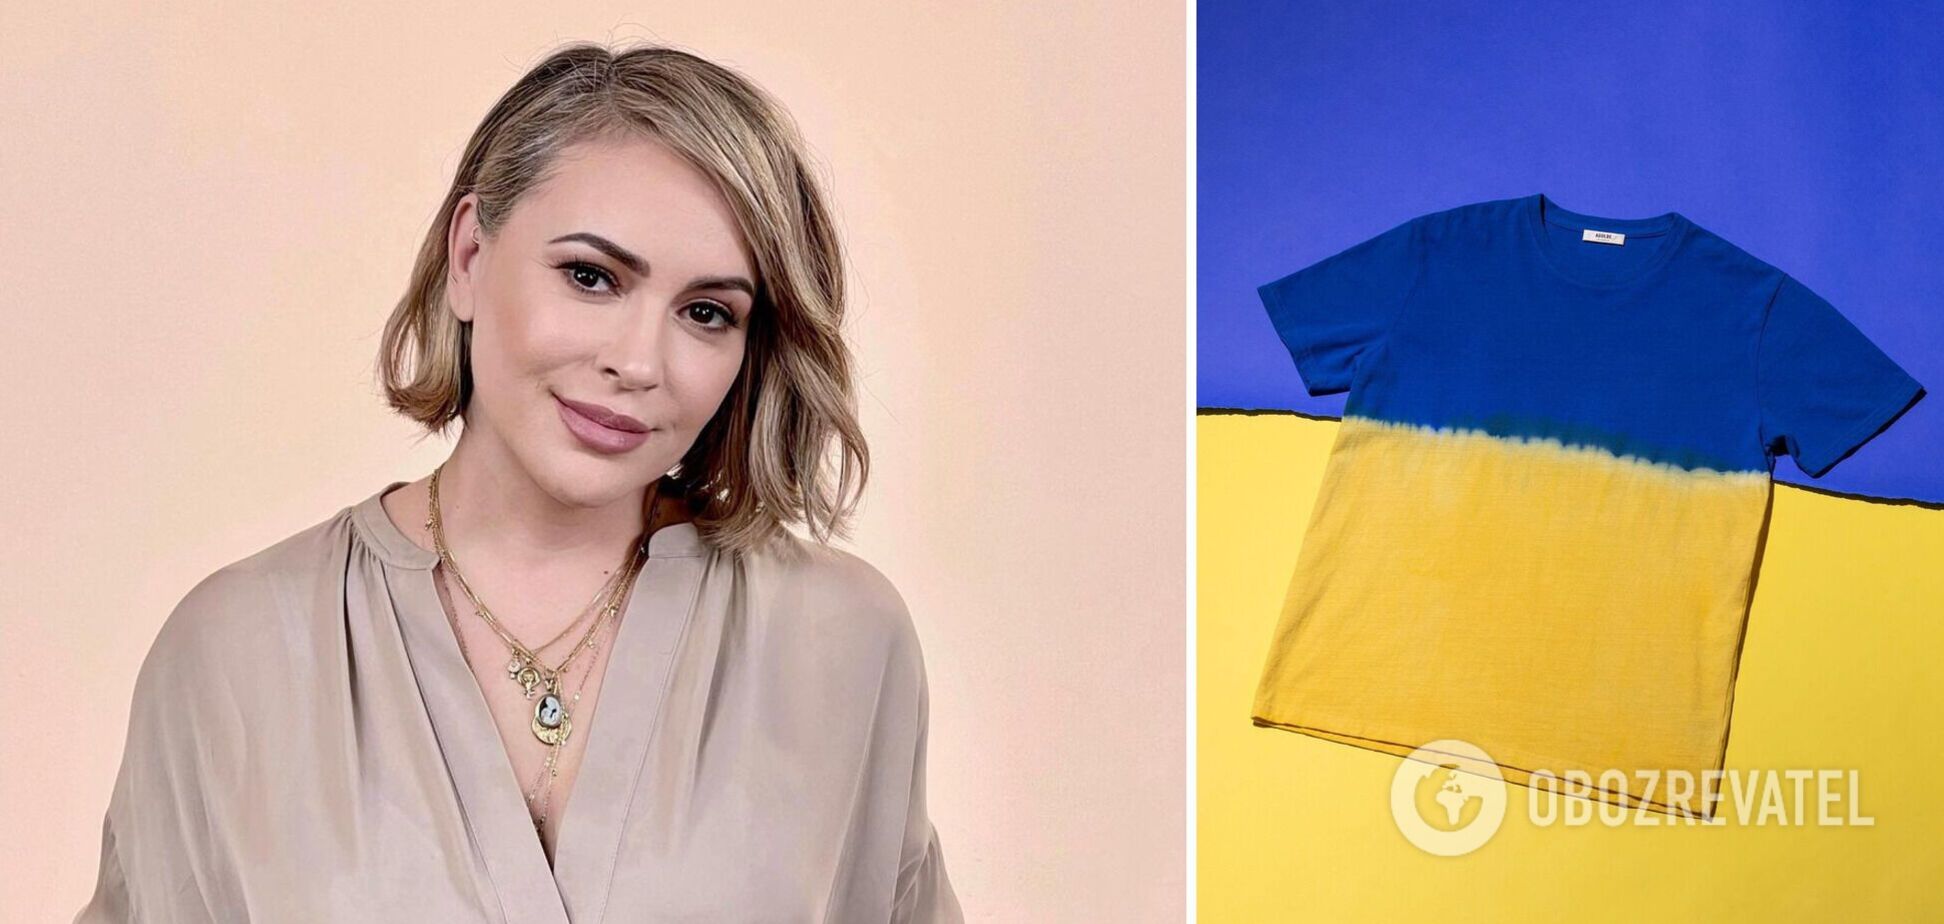 Алисса Милано надела сине-желтую футболку в поддержку Украины: актрису атаковали боты